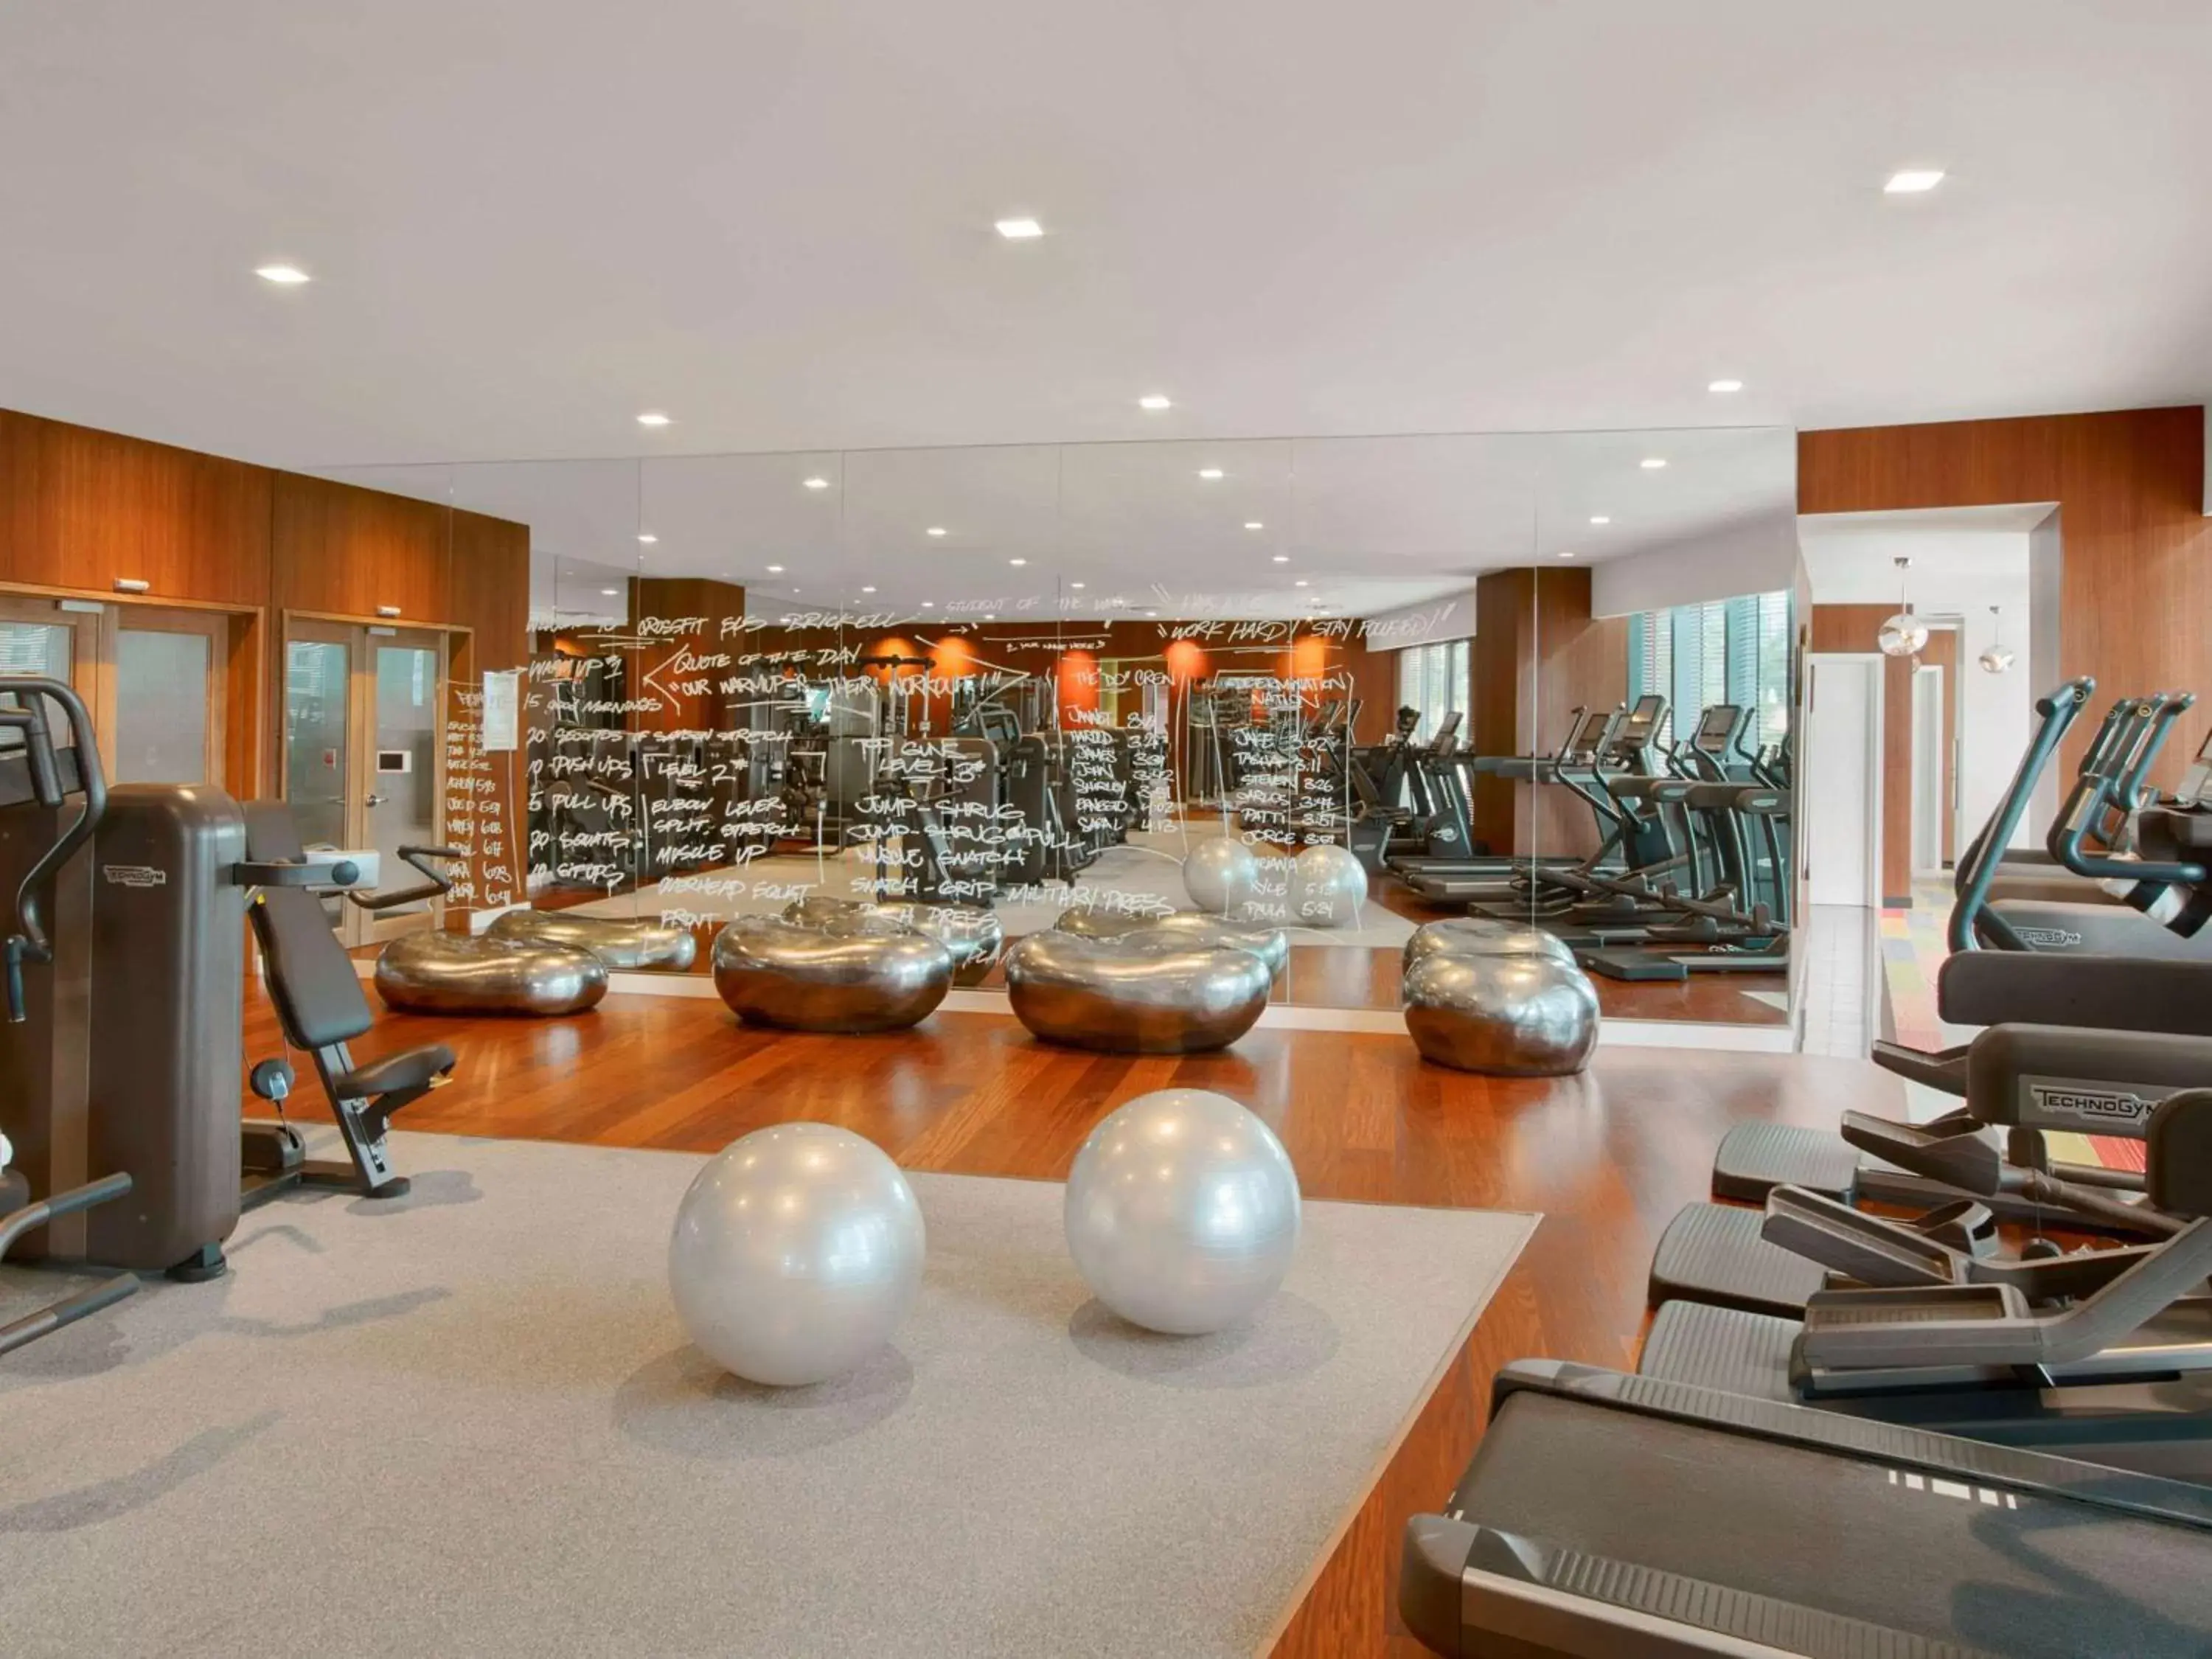 Fitness centre/facilities, Fitness Center/Facilities in SLS Brickell